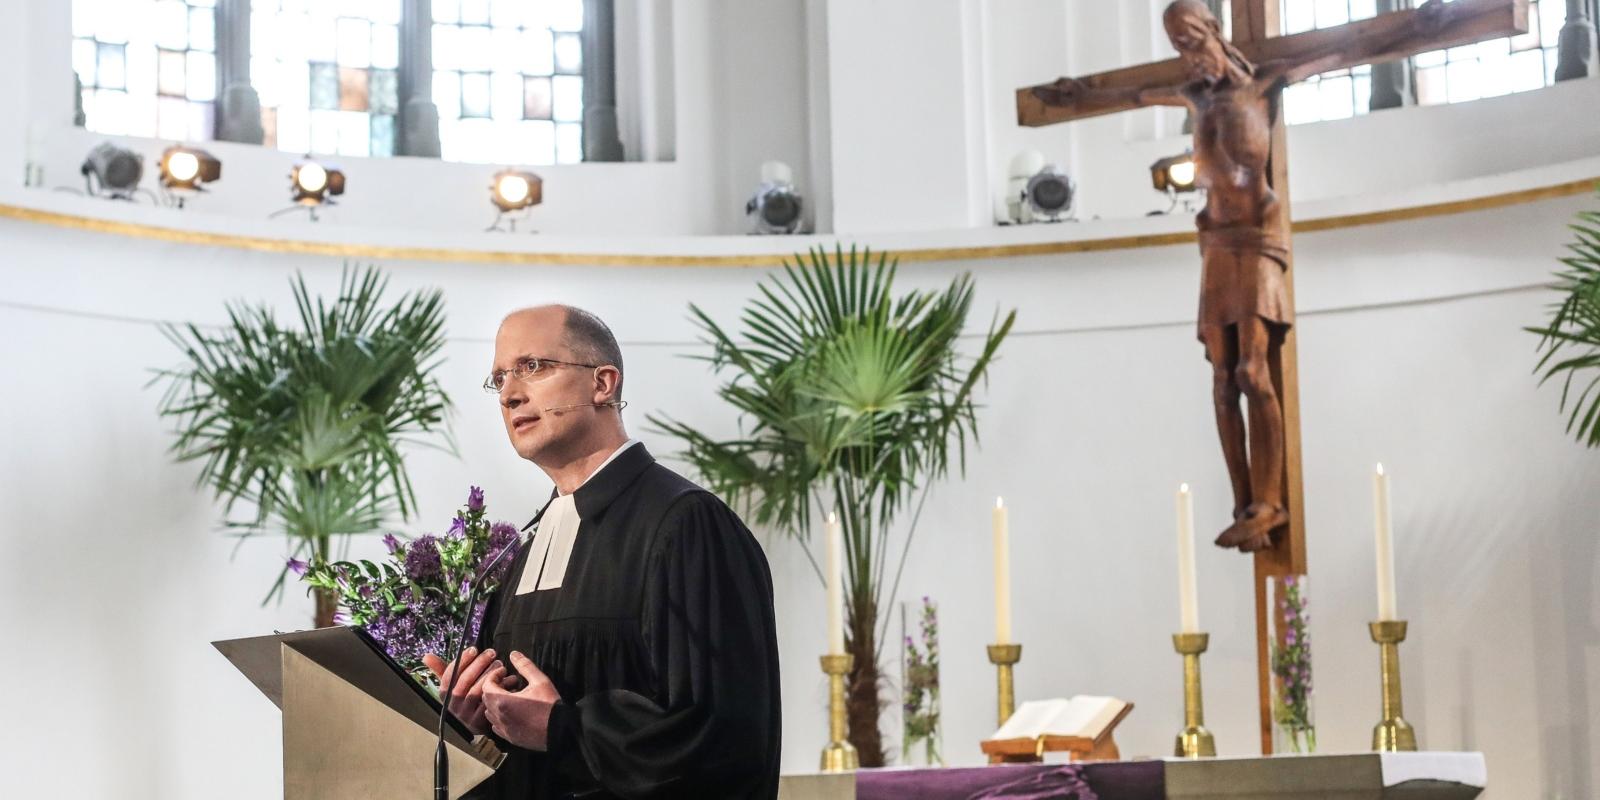 Am 20. März wurde in der Johanneskirche in Düsseldorf der ehemalige Präses der Evangelischen Kirche im Rheinland Manfred Rekowski verabschiedet und Thorsten Latzel als neuer Präses eingeführt.